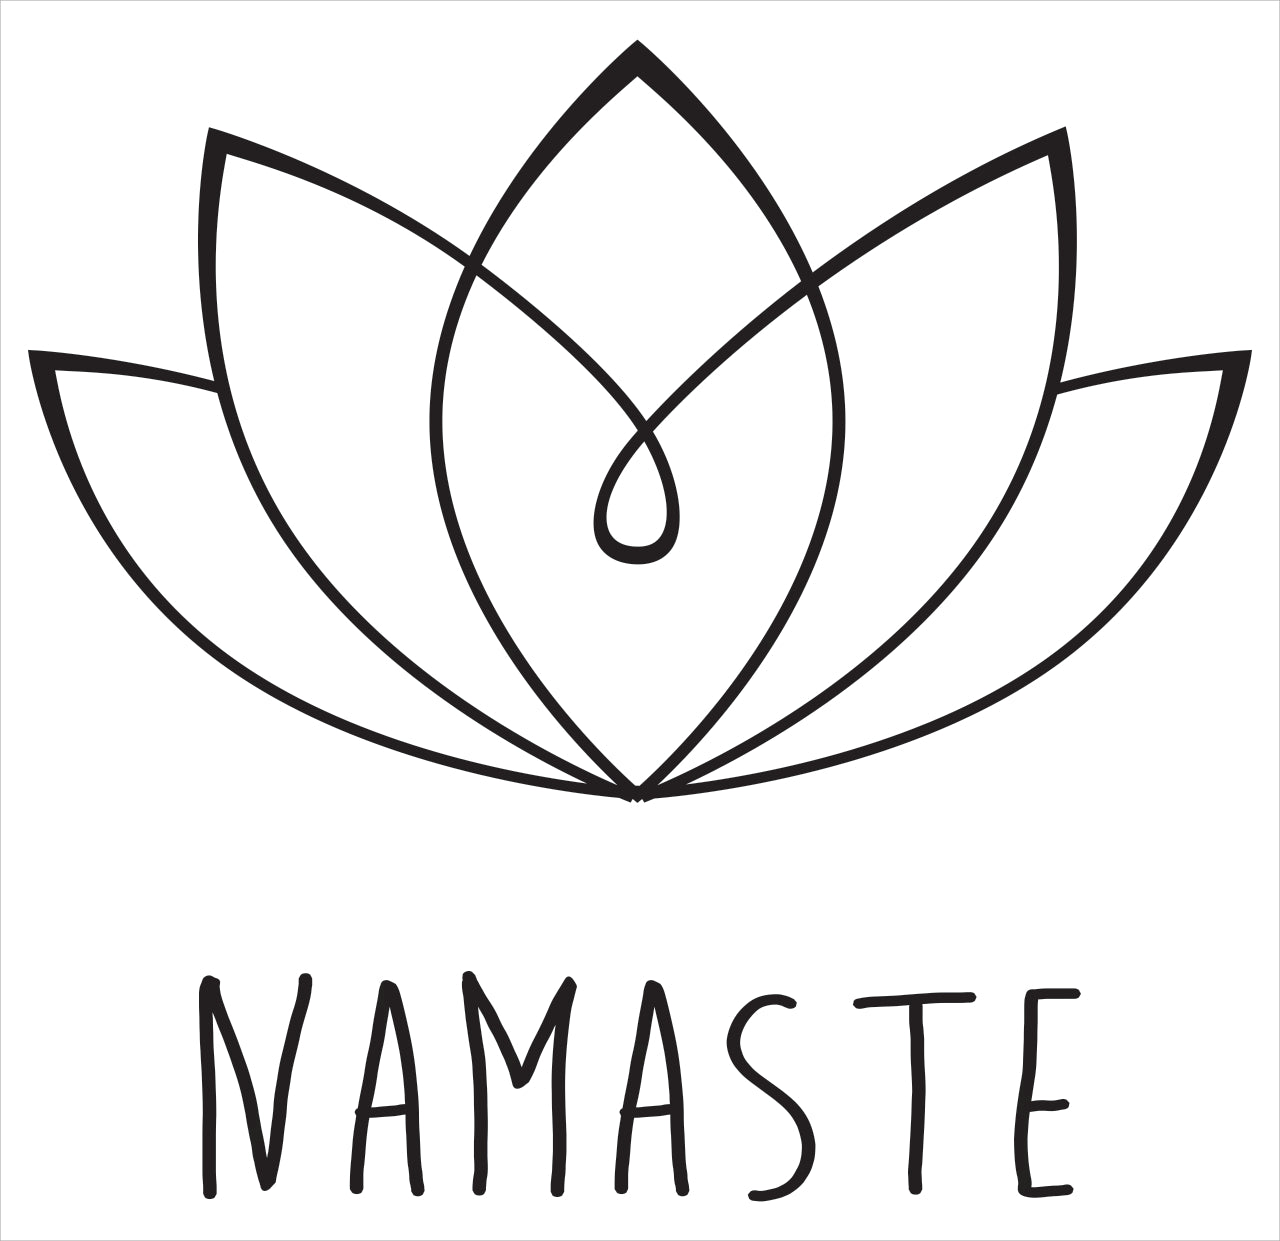 Adesivo Decorativo - Namaste 100 - Medidas 0,62x0,59M